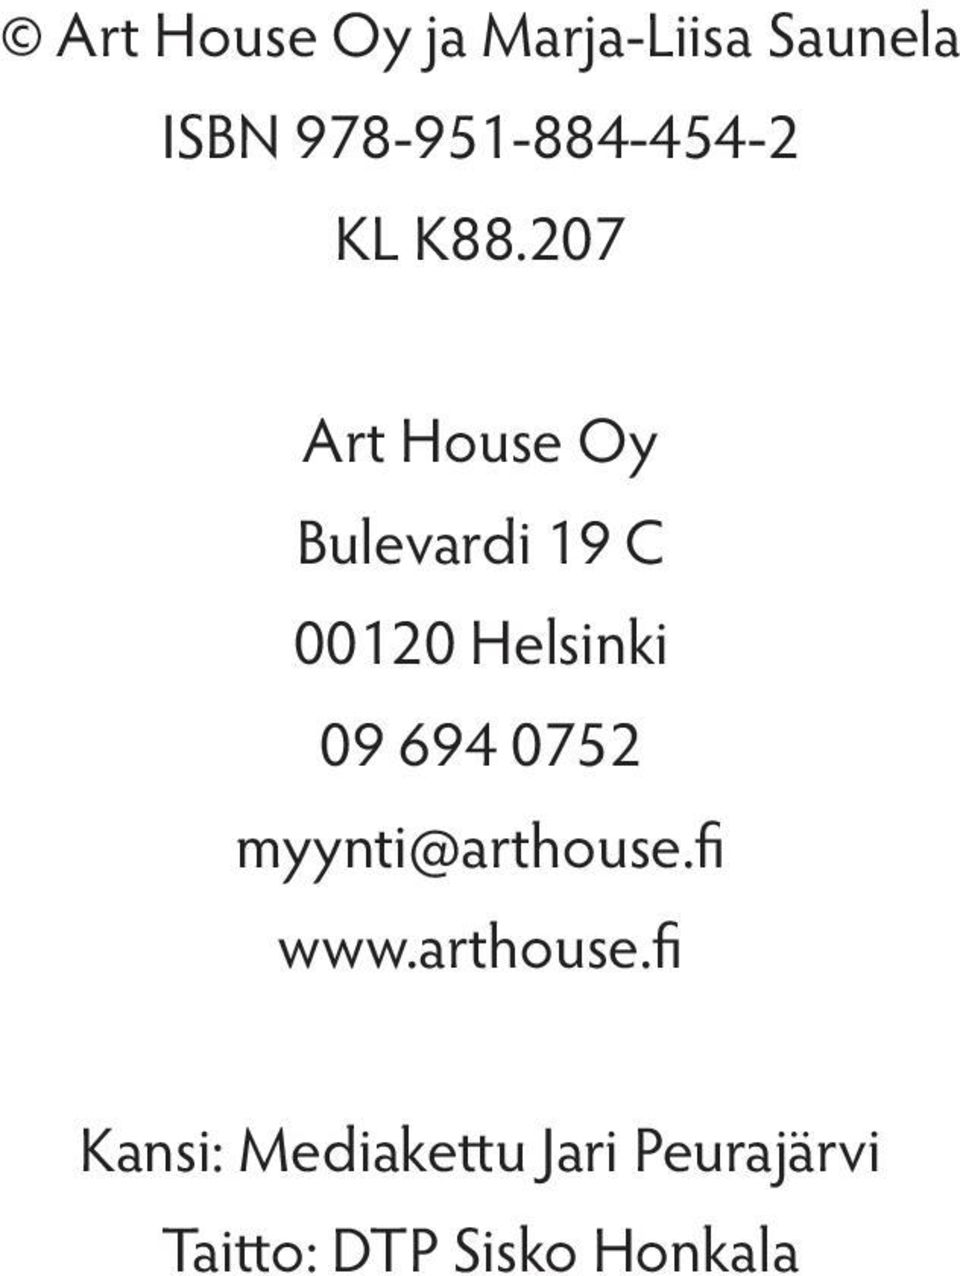 207 Art House Oy Bulevardi 19 C 00120 Helsinki 09 694